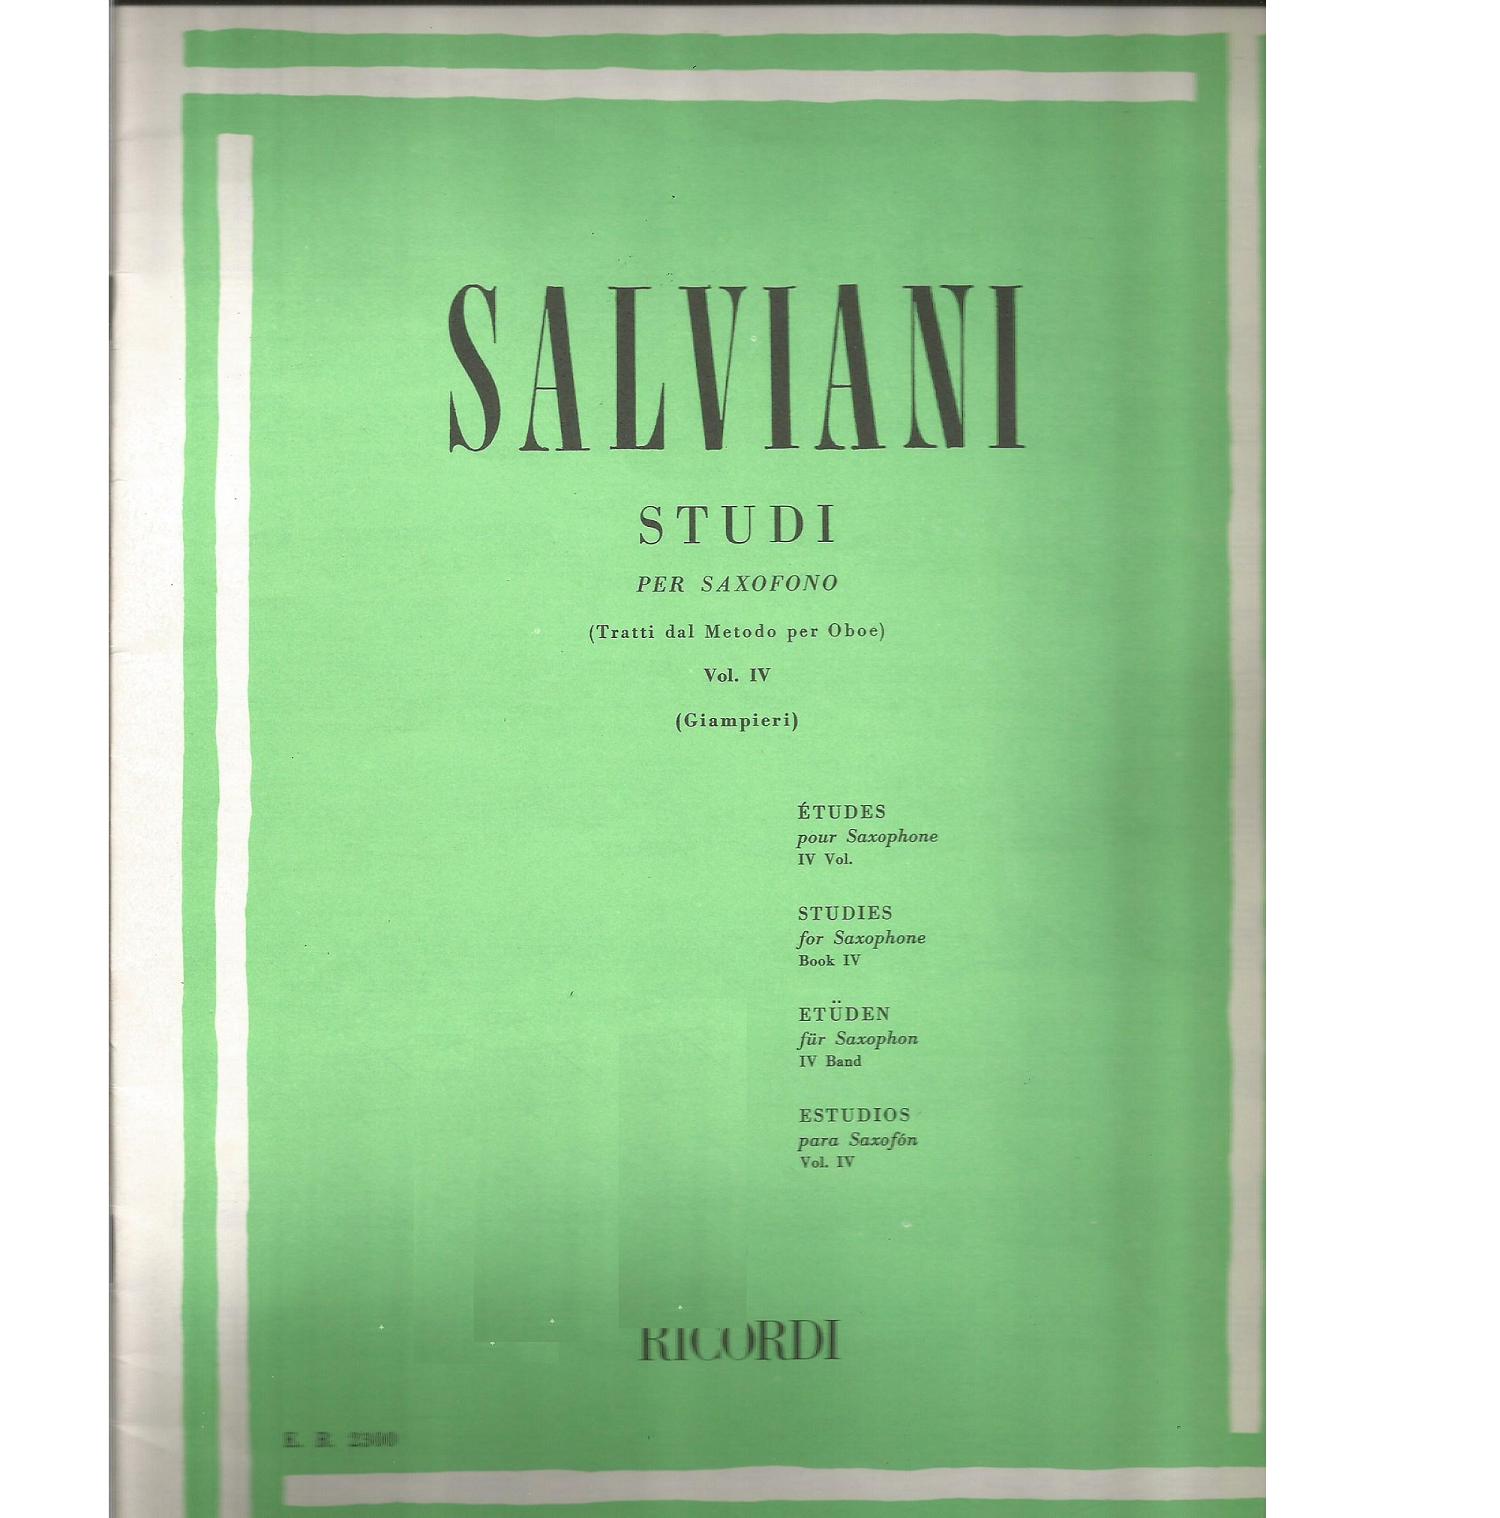 Salviani STUDI per Saxofono (Tratti dal Metodo per Oboe) Vol. IV (Giampieri) - Ricordi